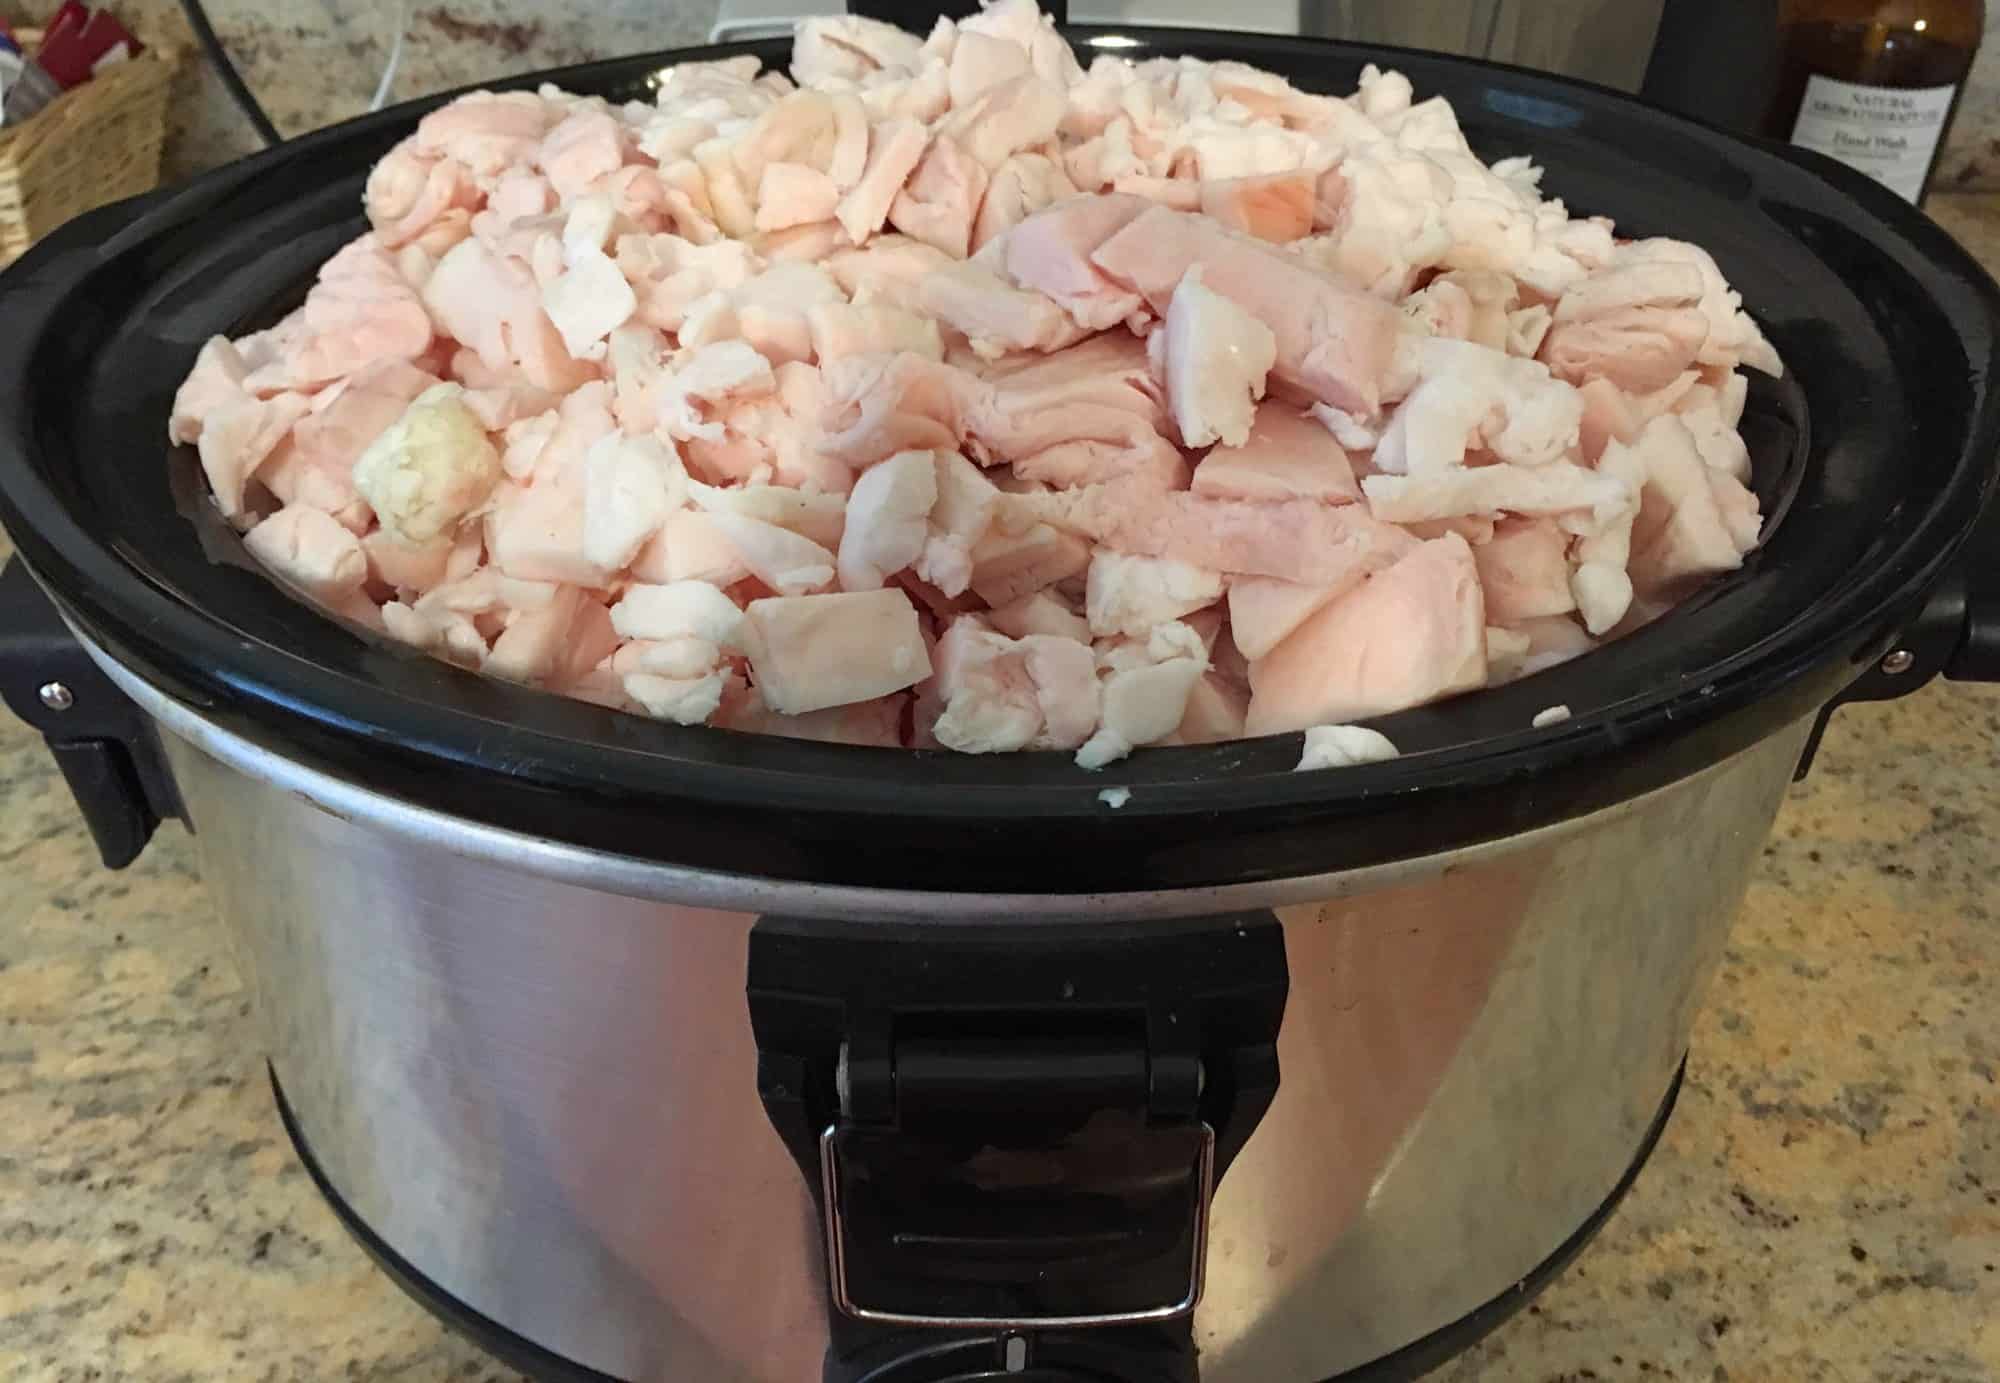 how to render lard pork pig fat homemade diy slow cooker crock pot oven stovetop homesteading leaf kidney tallow fatback